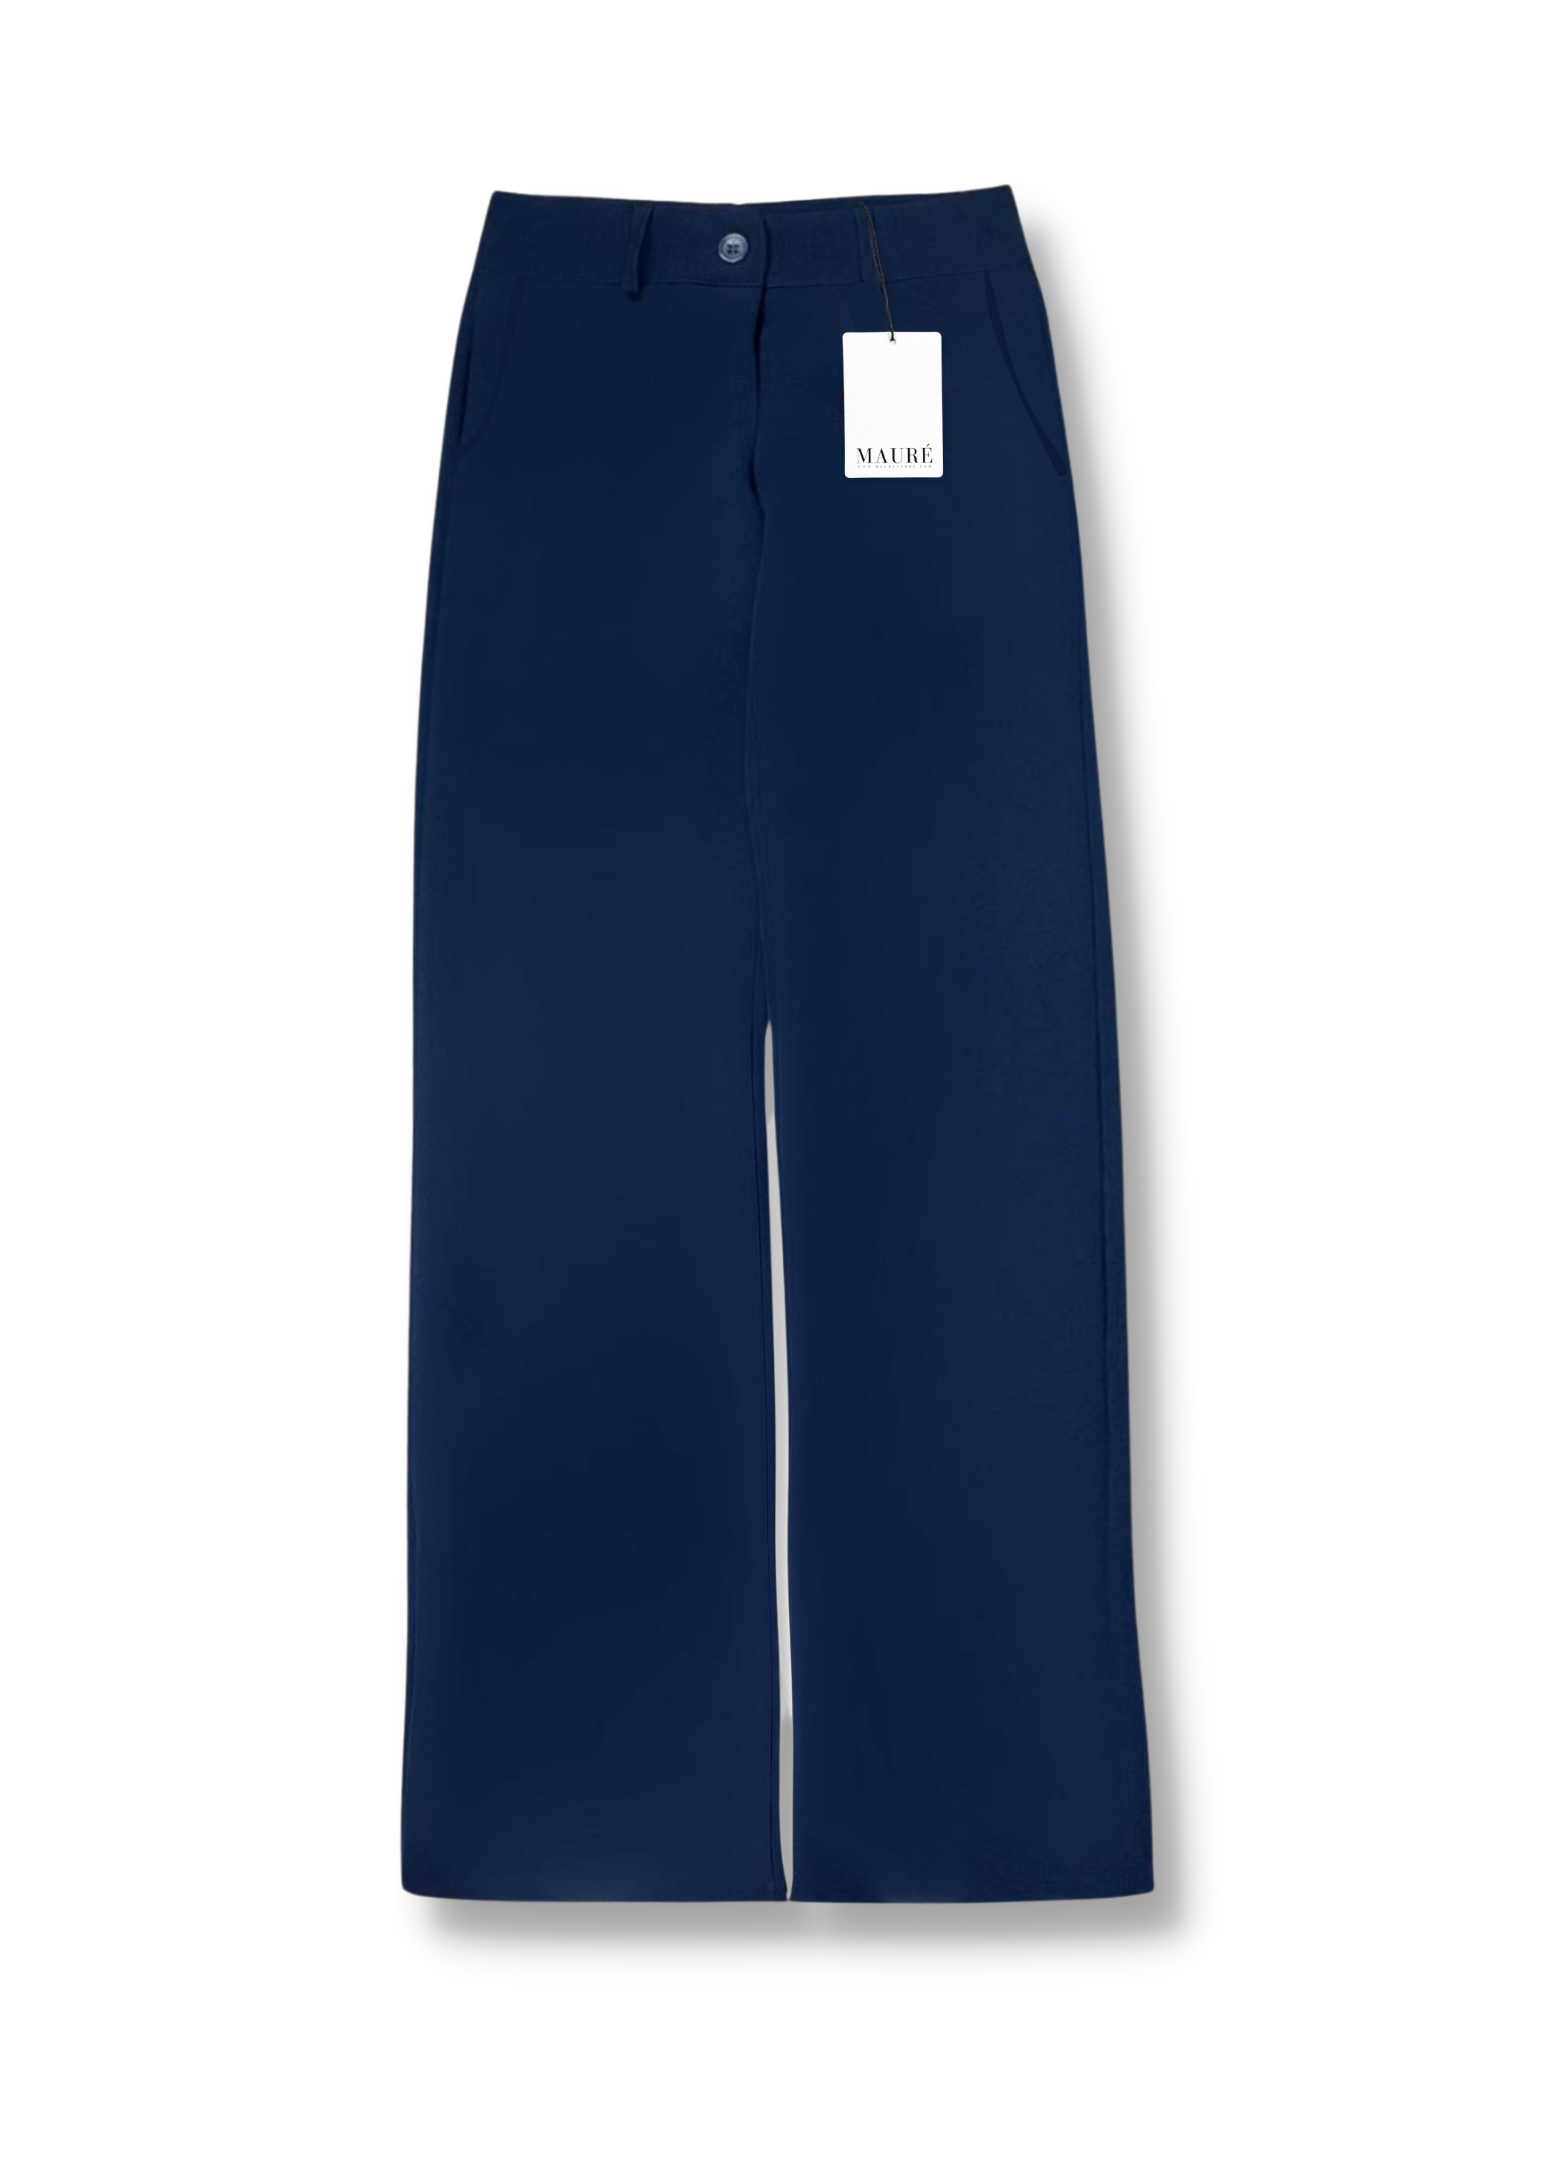 Pantalon droit taille basse/mi casual bleu nuit (TALL)